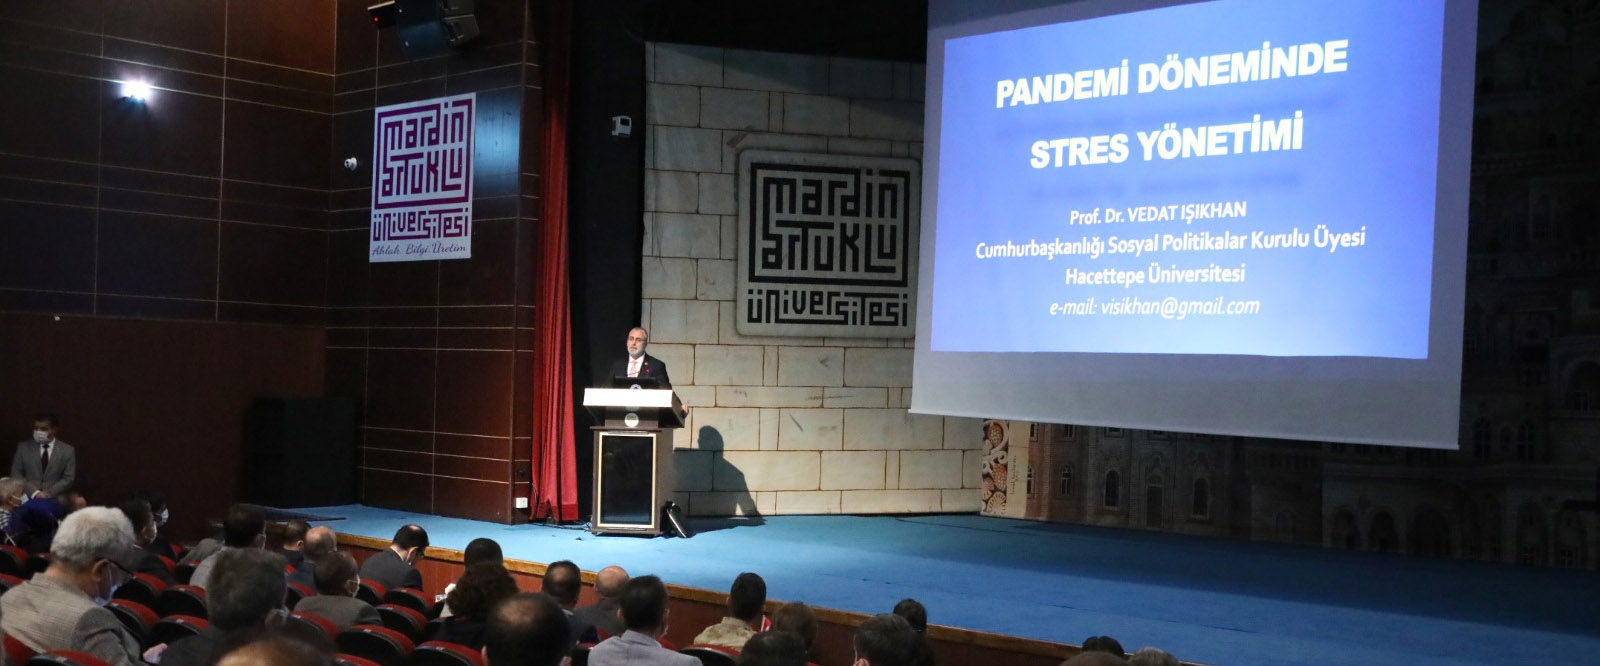 Mardin’de “Pandemi Döneminde Stres Yönetimi” konferansı düzenlendi